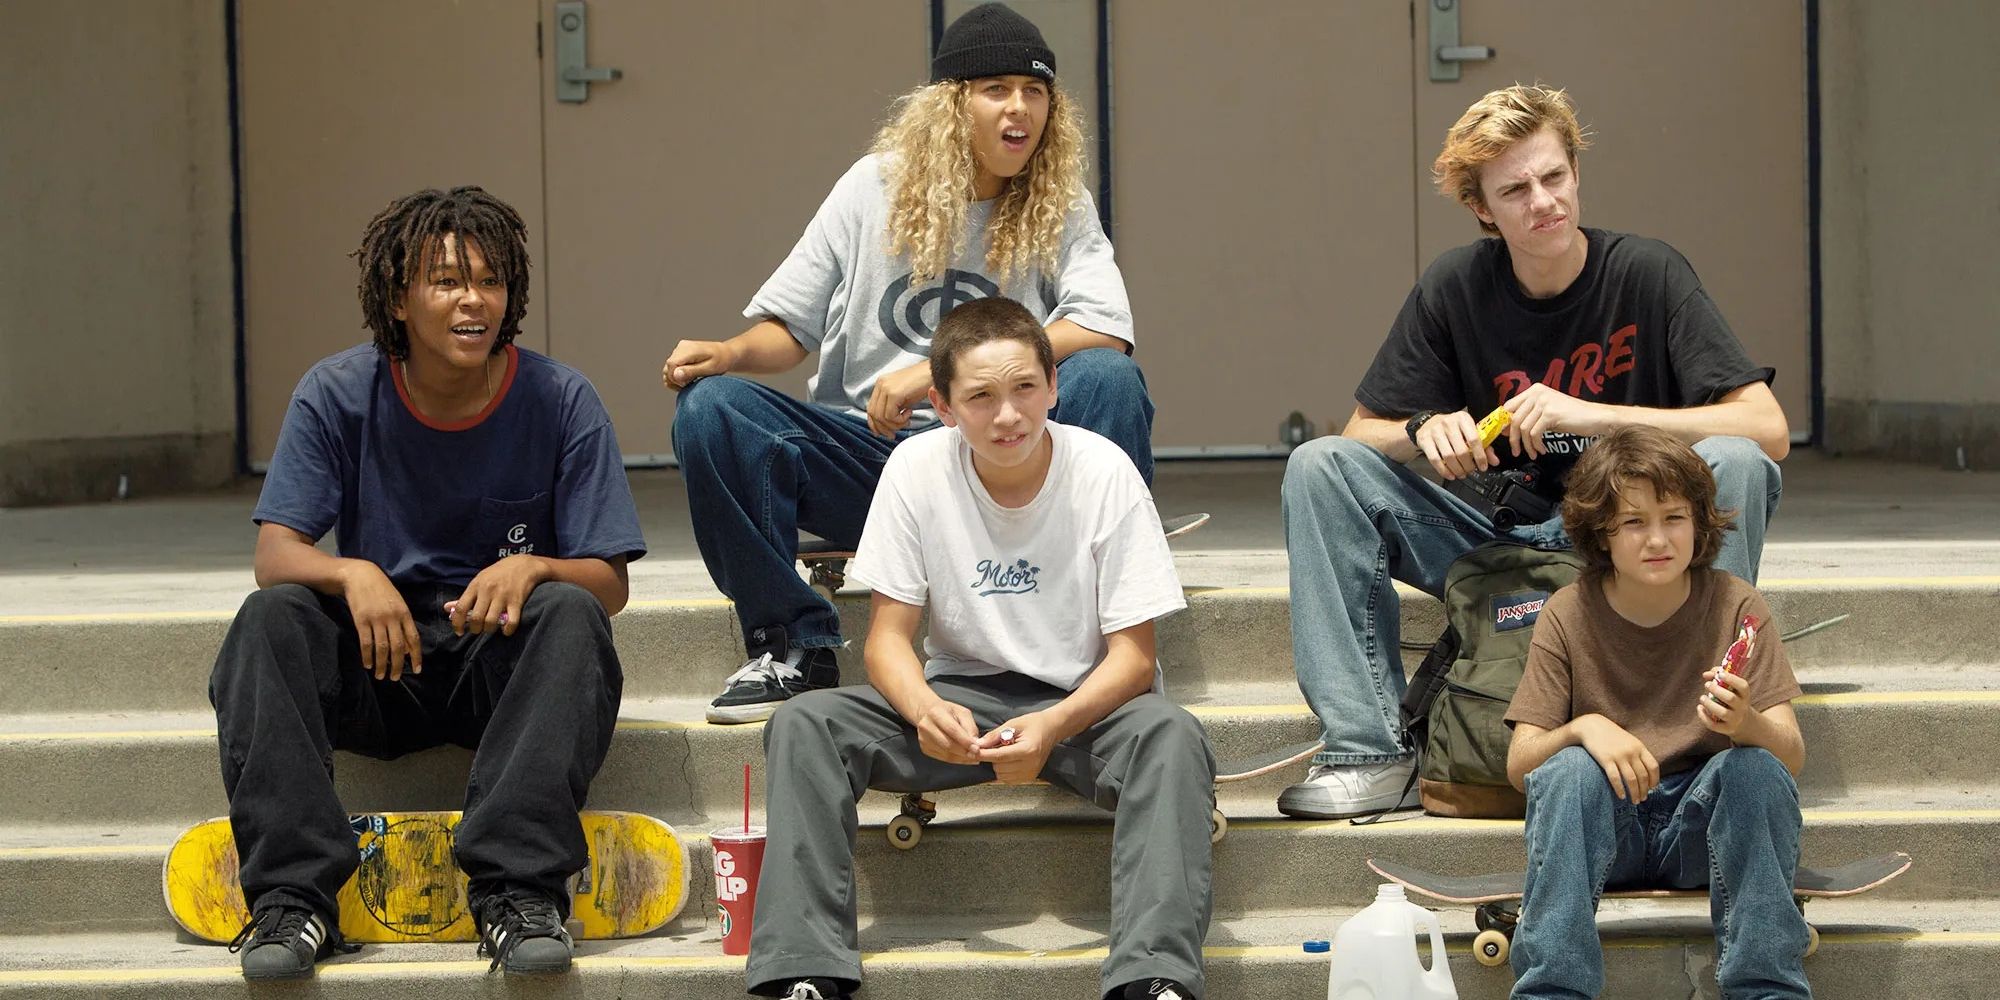 Stevie e seus amigos sentam-se em meados dos anos 90 (2018)